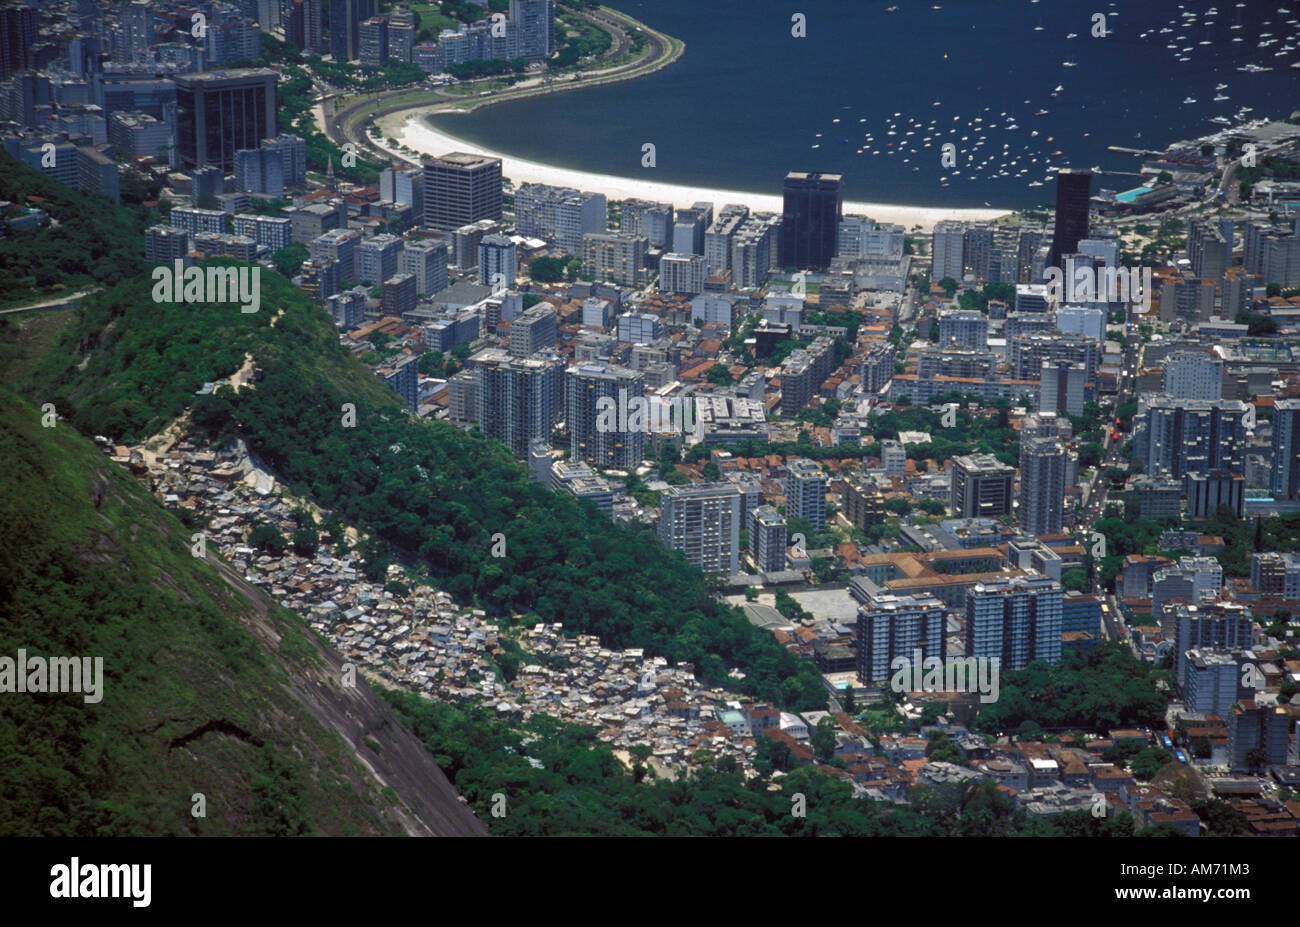 Rio de Janeiro Botafogo bay Favella slums on the hillside Stock Photo